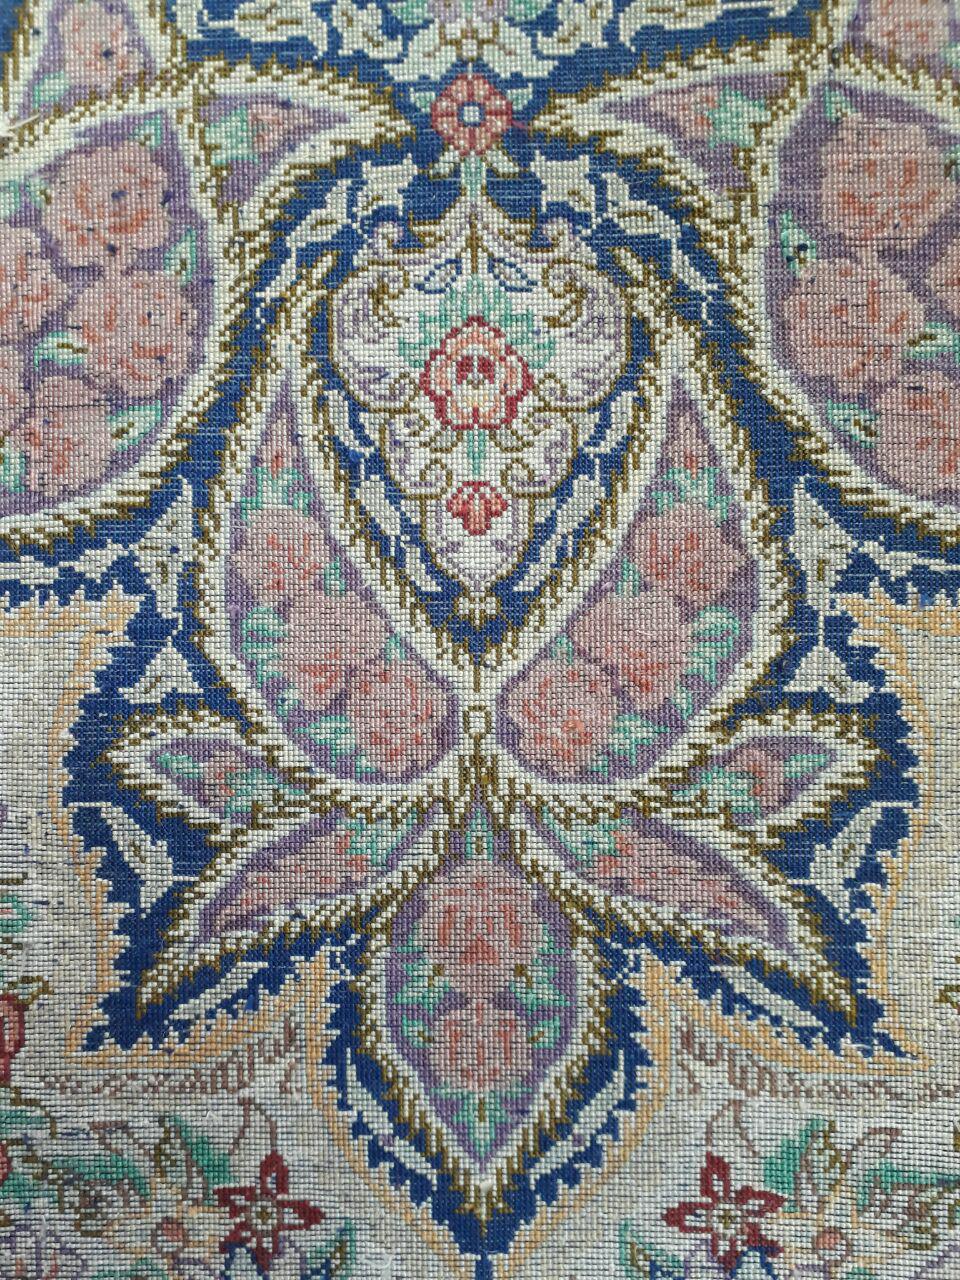 رنگ برداری فرش دستباف یکی از شغل های مرتبط با عملیات تکمیلی فرش